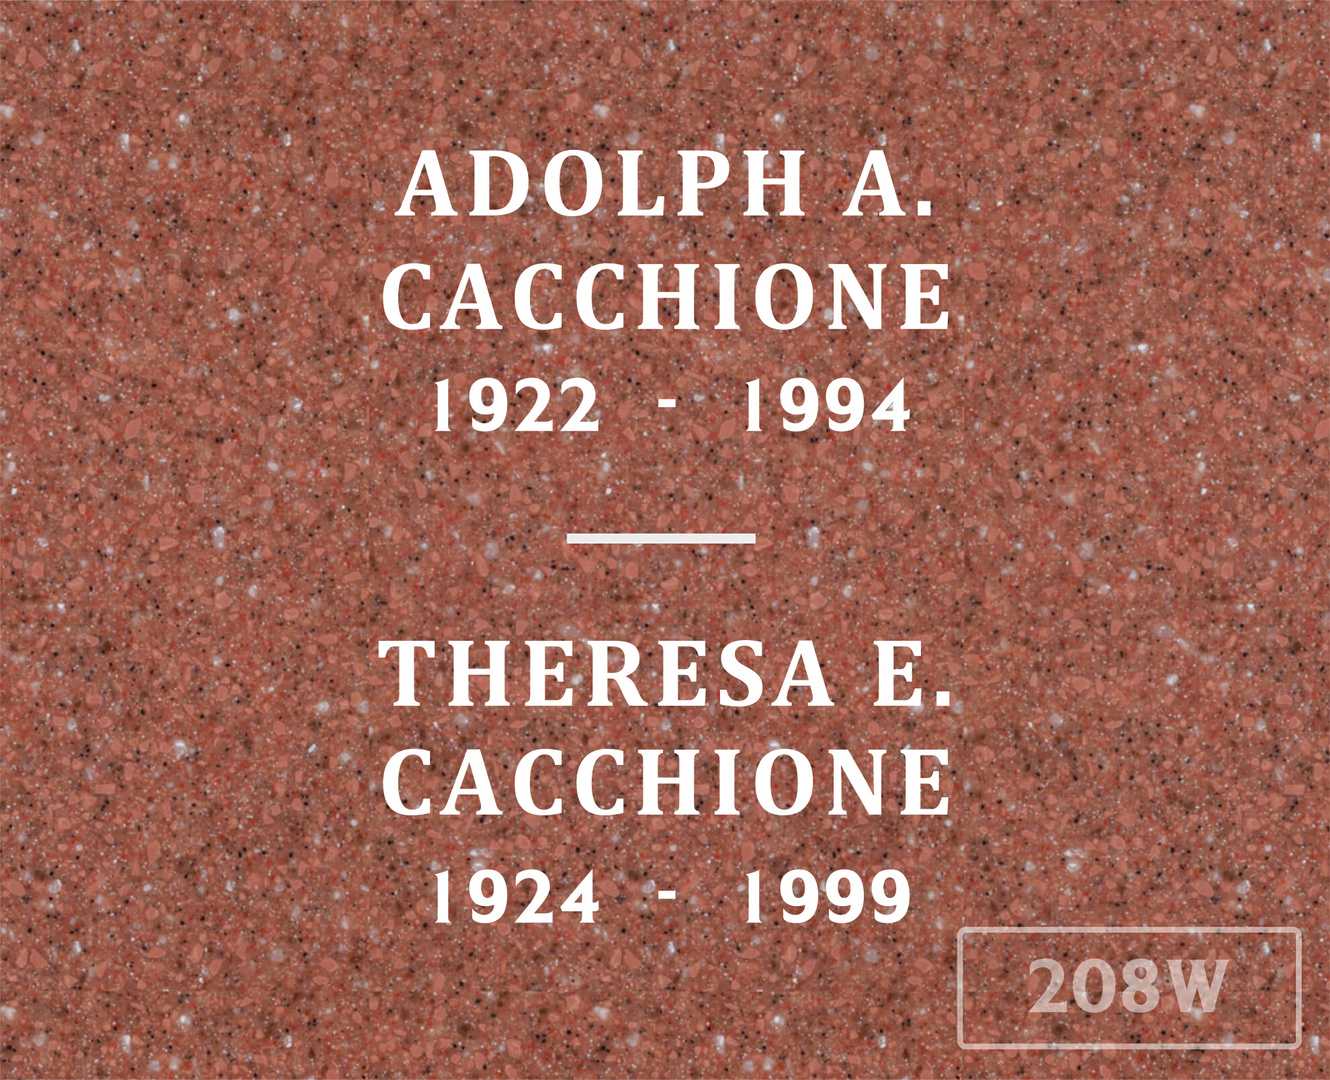 Robert A. Cacchione's grave